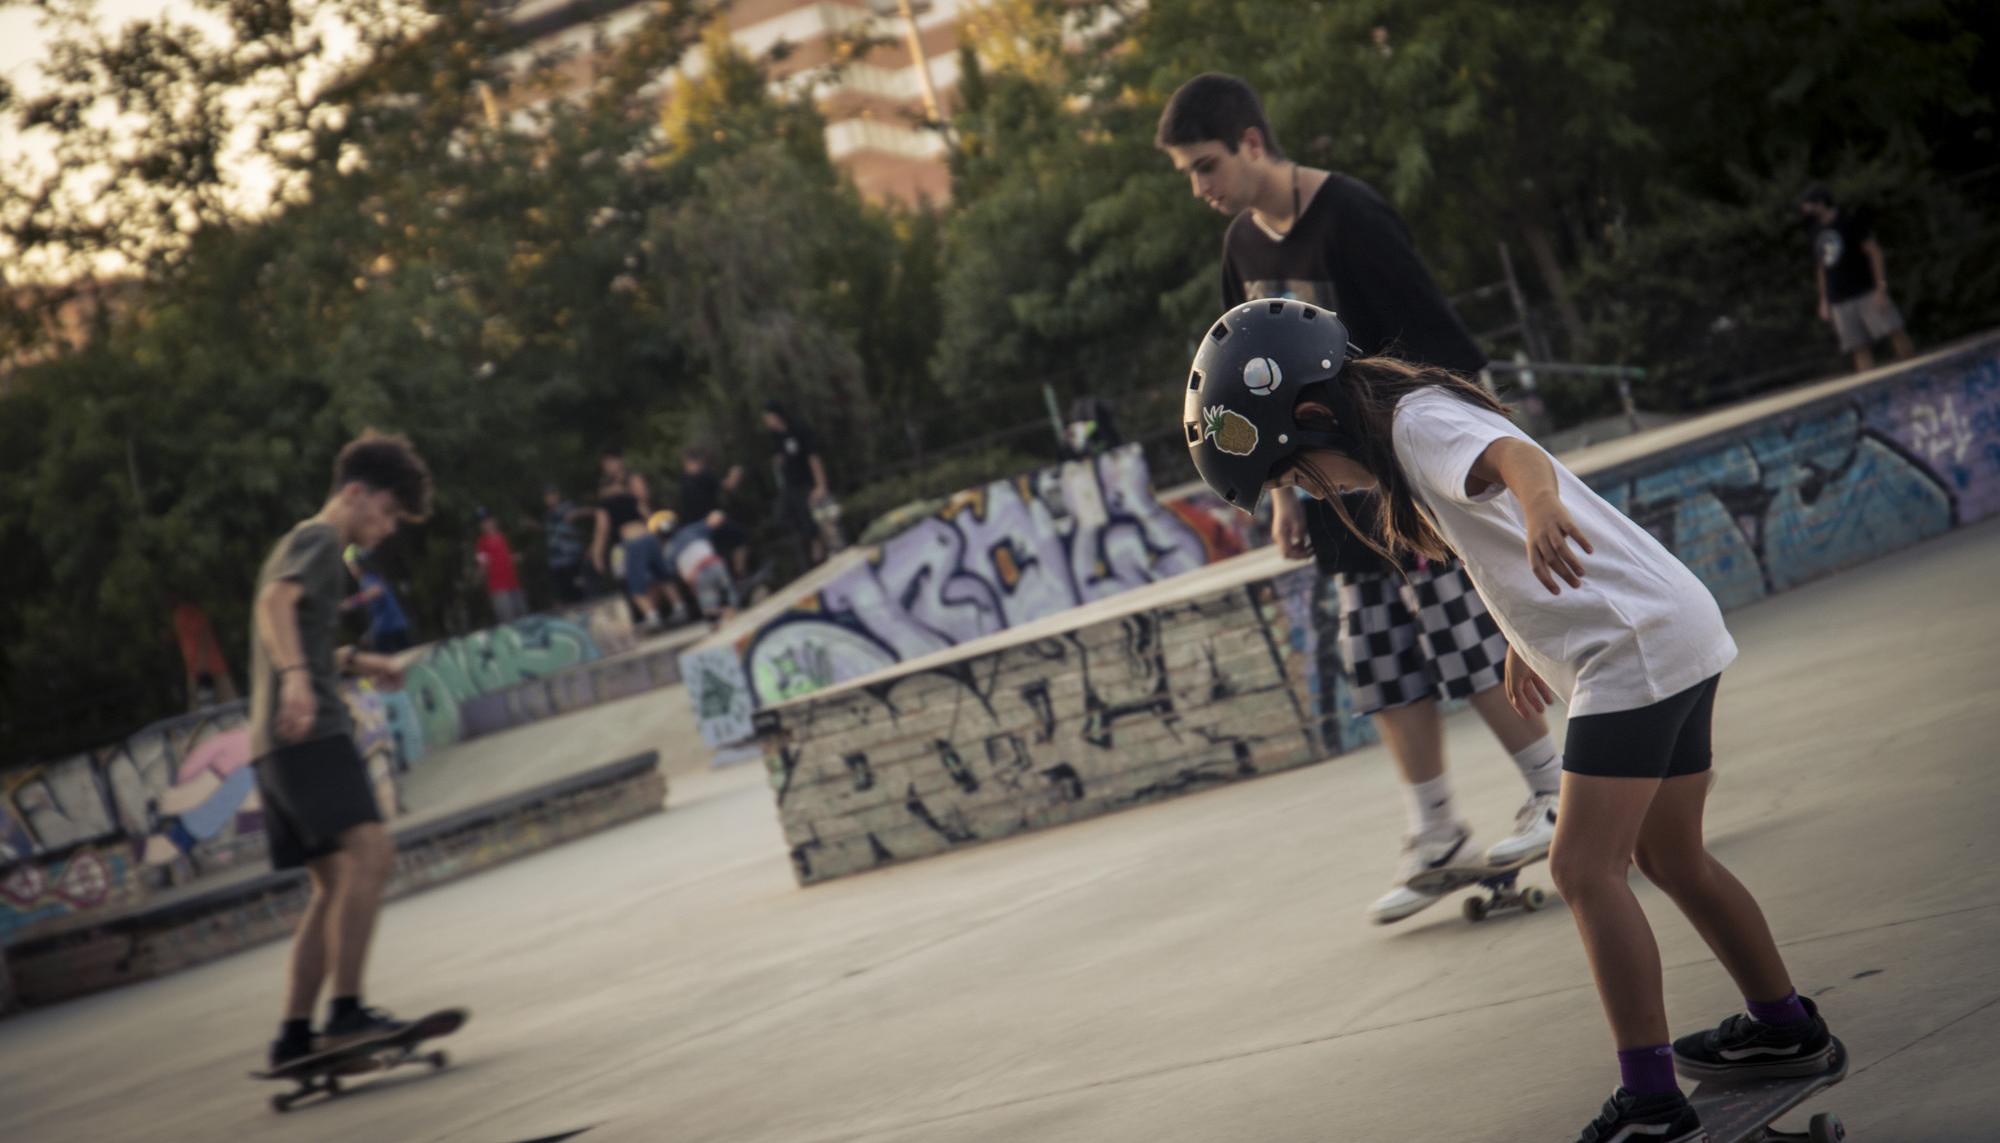 Skaters en el skatepark Bola de Oro, Granada - 4